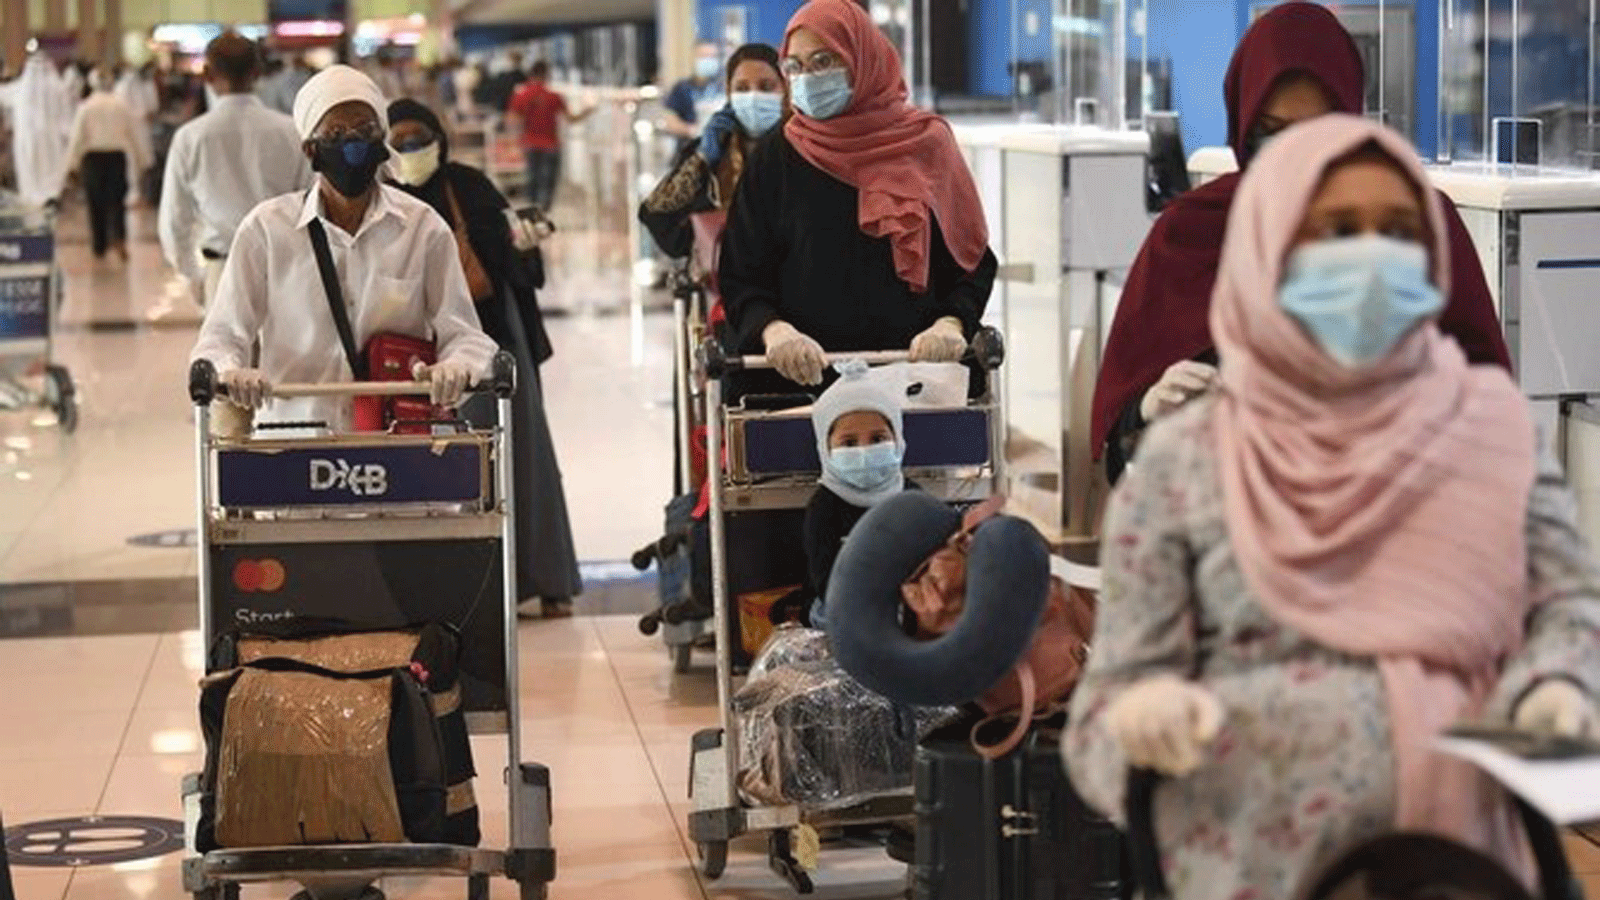 مسافرون في مطار دبي الدولي وسط أزمة فيروس كورونا بتاريخ 7 أيار/ مايو 2020